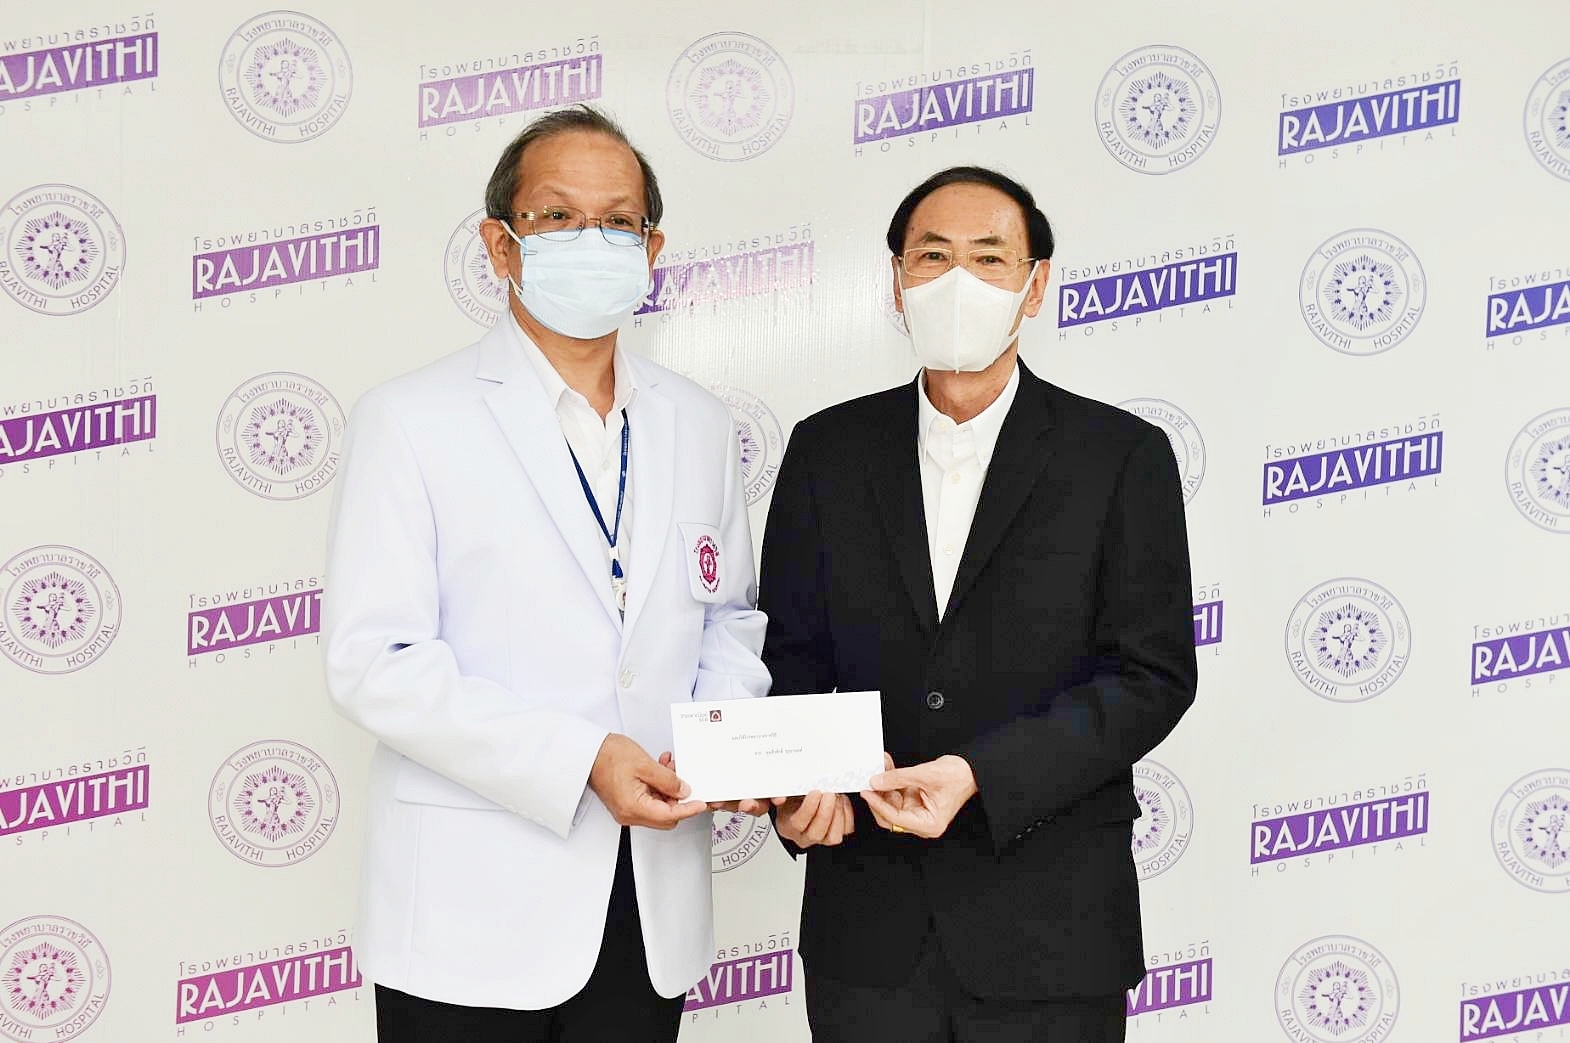 ภาพข่าว: ผู้บริหาร ซีพีเอฟ มอบเงินสนับสนุน โรงพยาบาลราชวิถี สู้วิกฤตโควิด-19